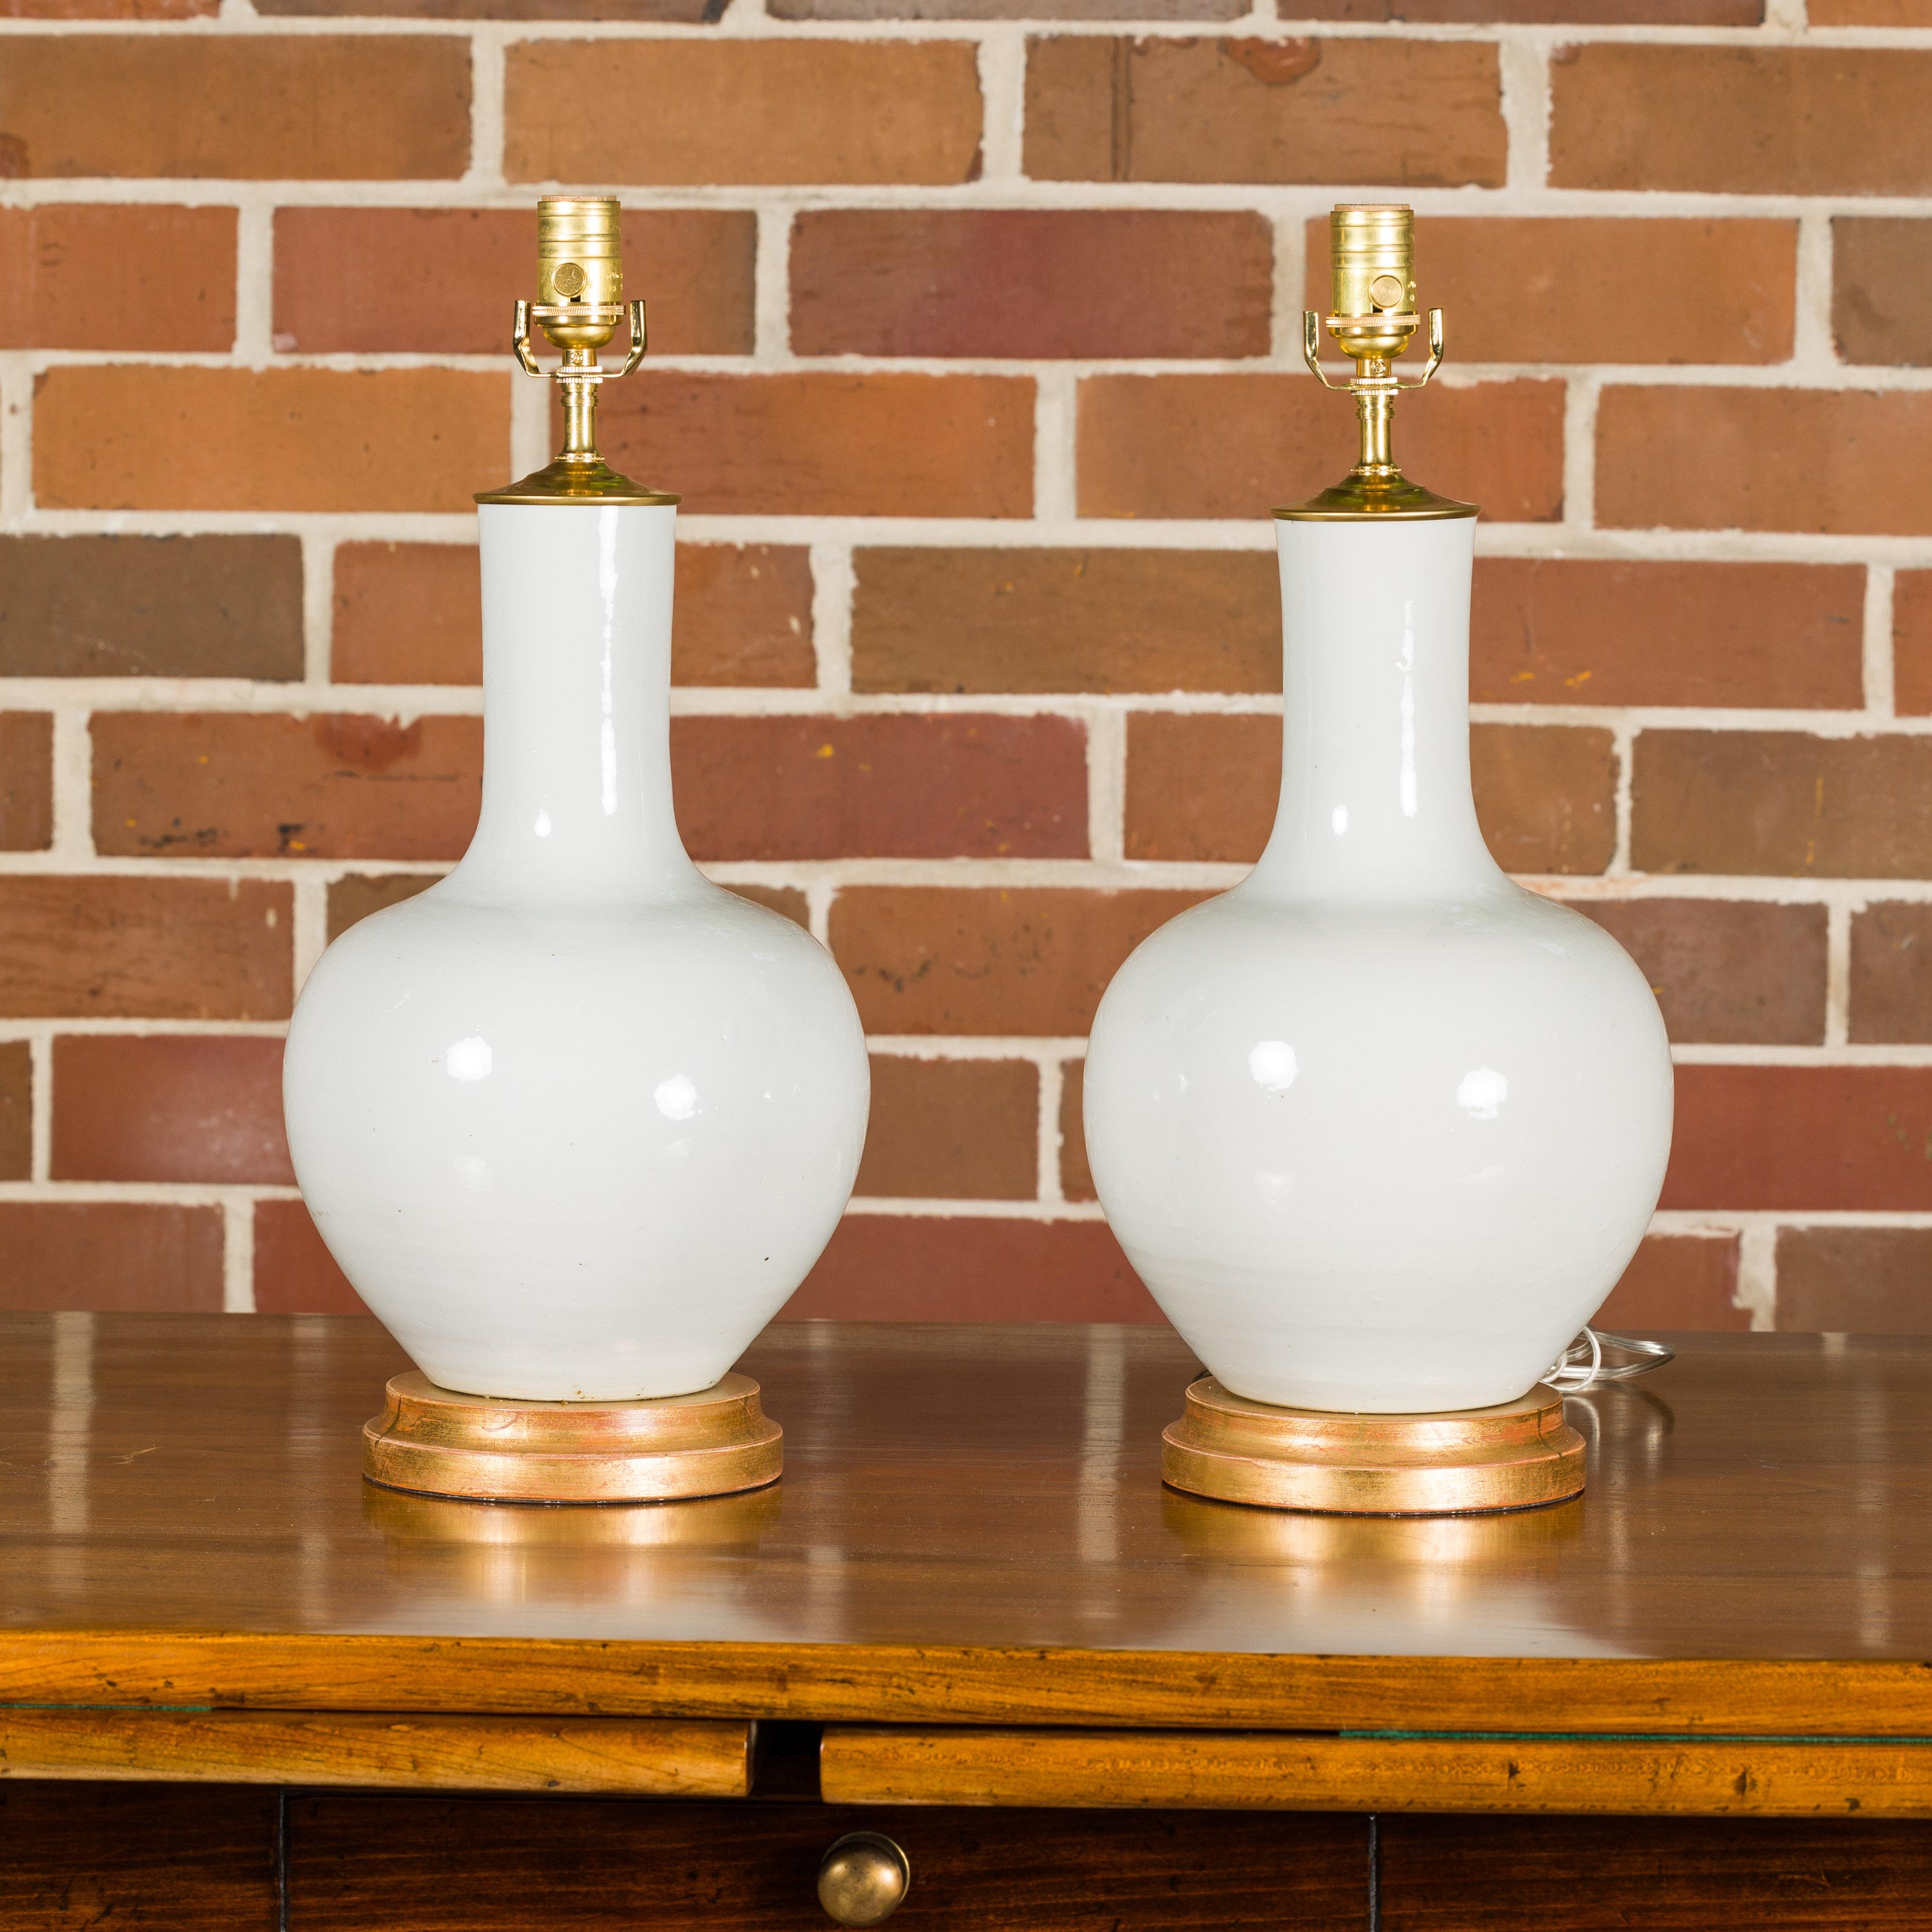 Paire de vases en porcelaine blanche transformés en lampes de table câblées pour les Etats-Unis et montés sur des bases circulaires en bois doré. Cette paire de lampes de table allie harmonieusement l'élégance classique à la fonctionnalité moderne.